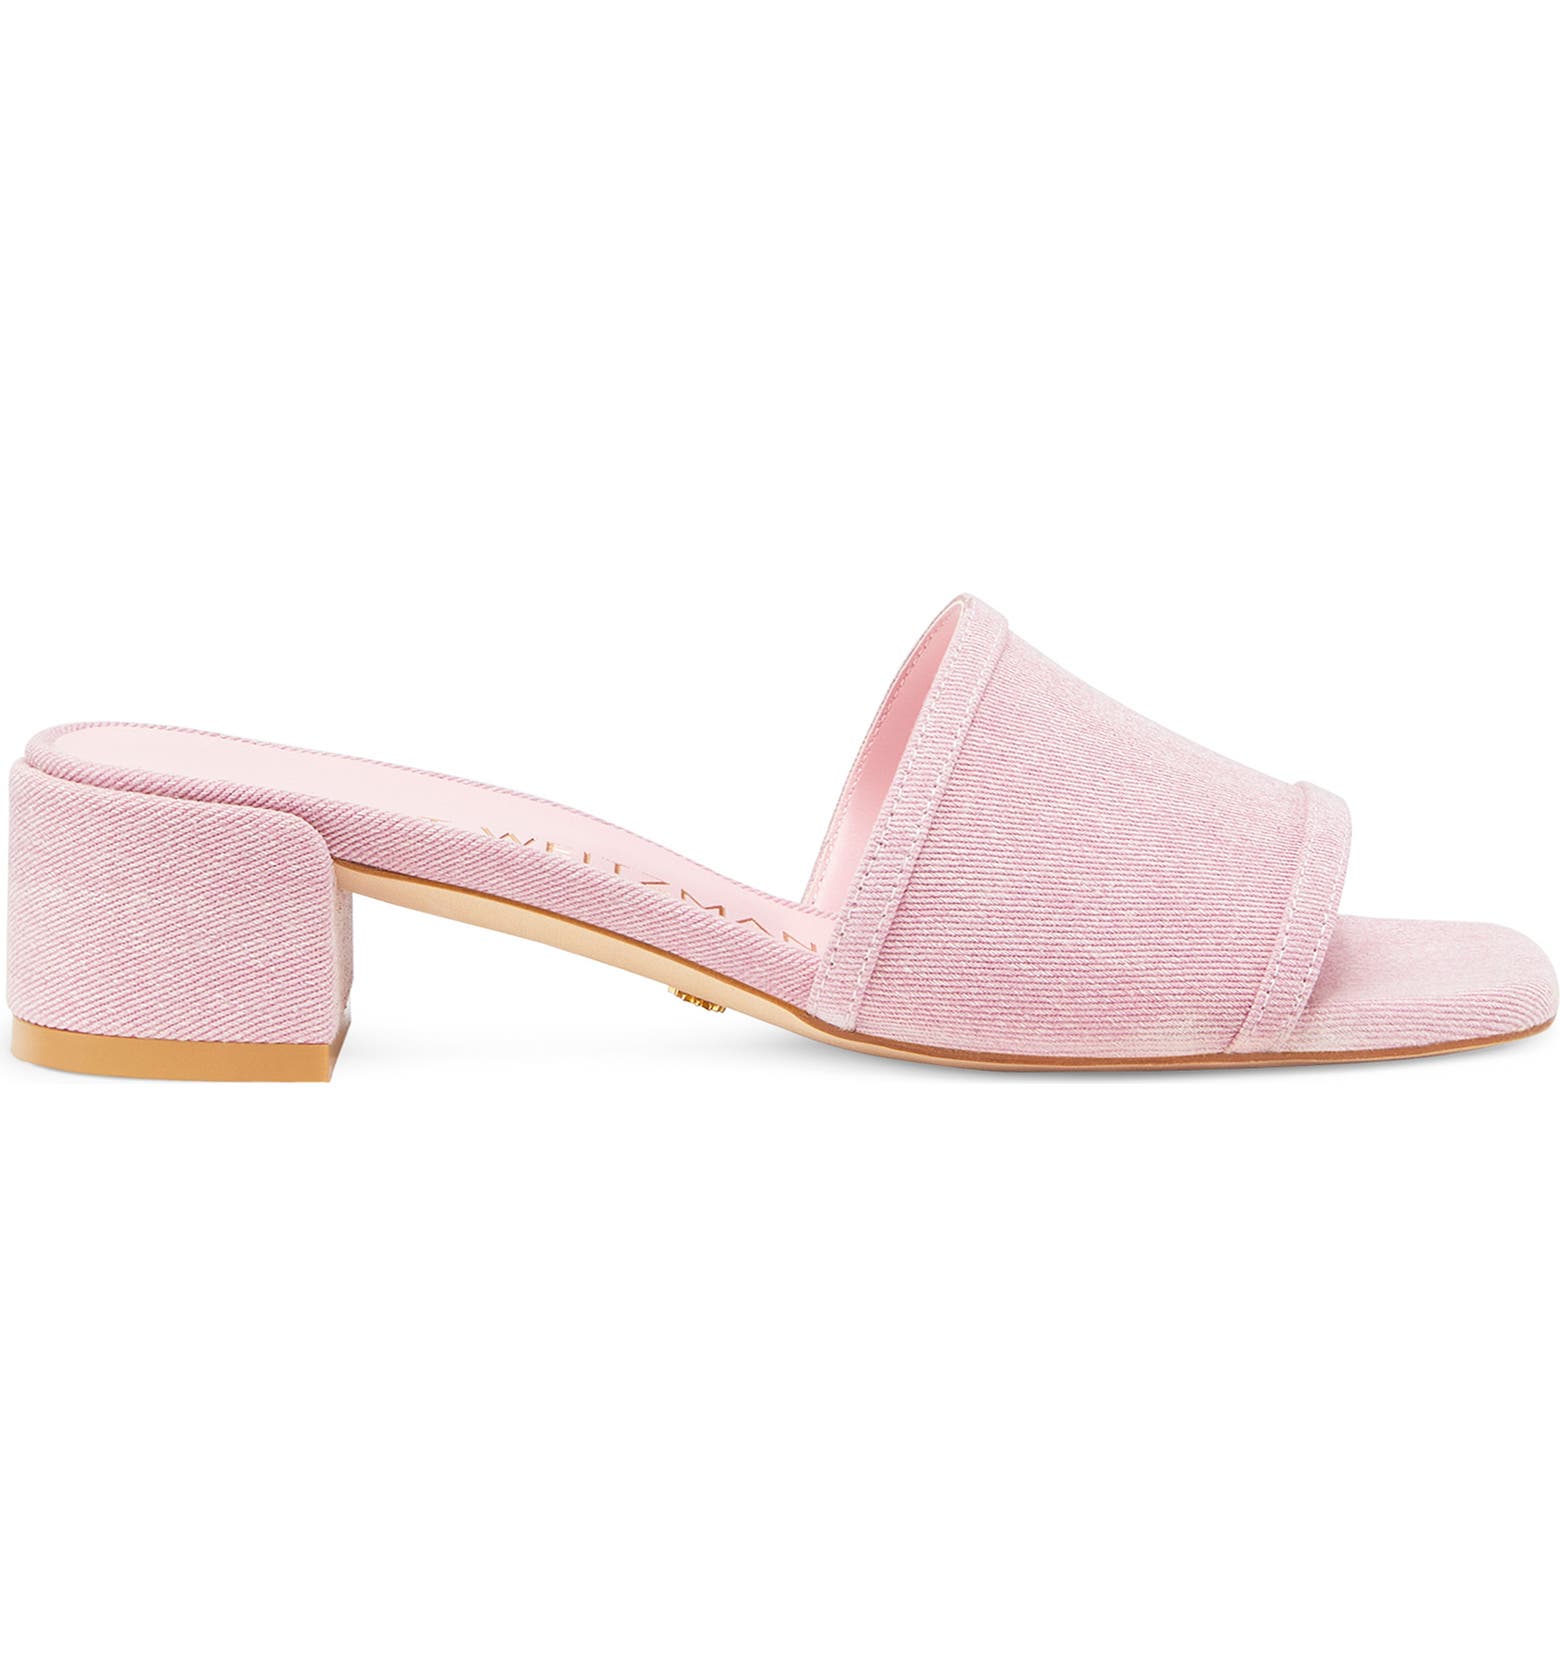 Light pink slide sandals